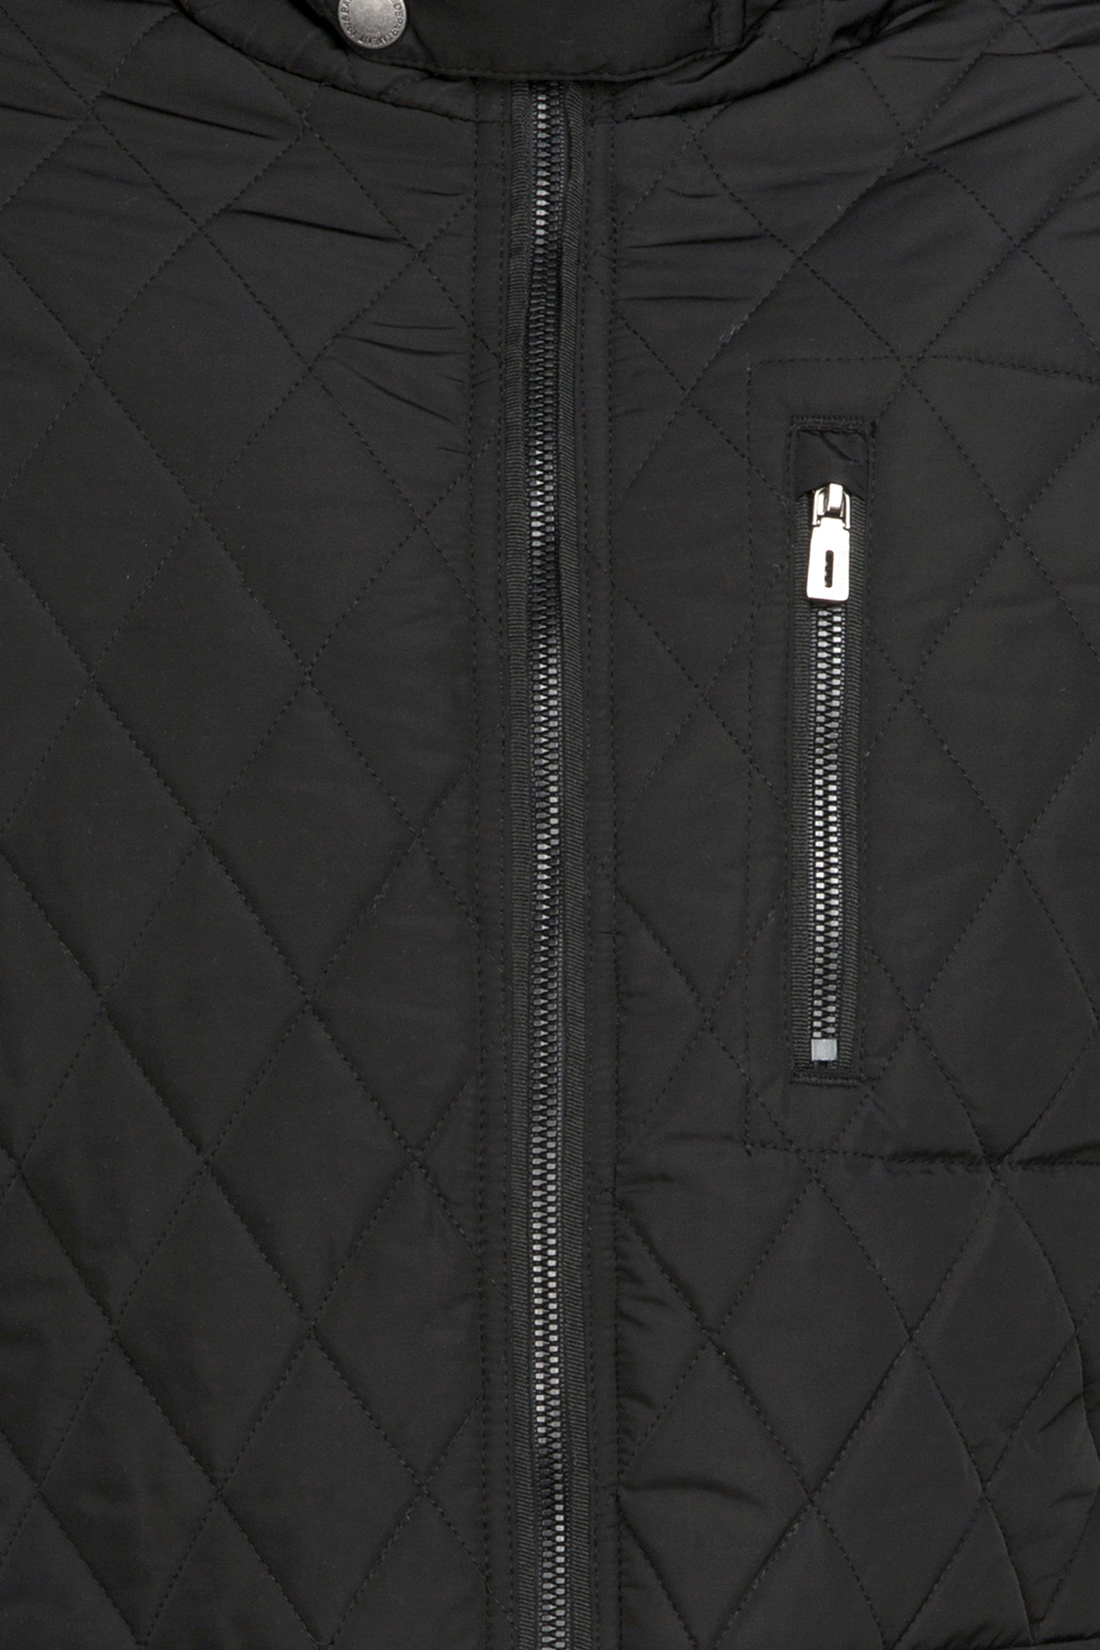 Стёганая куртка с воротником-стойкой (арт. baon B537017), размер M, цвет черный Стёганая куртка с воротником-стойкой (арт. baon B537017) - фото 3